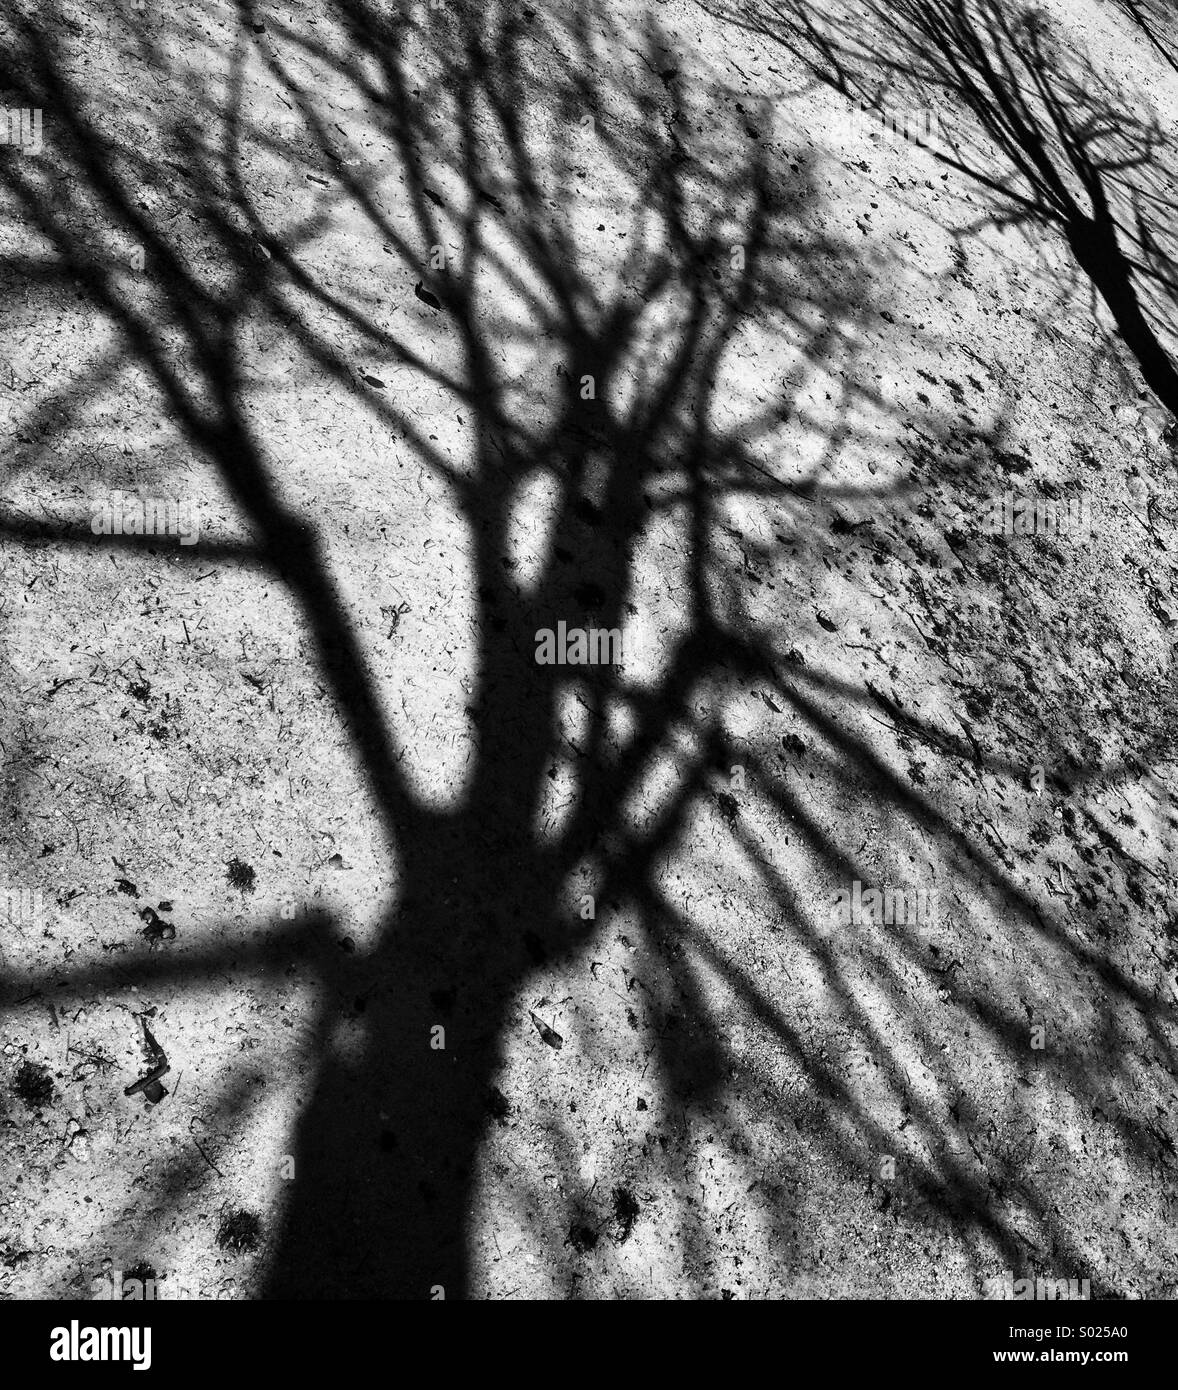 Trees shadows, black & white Stock Photo